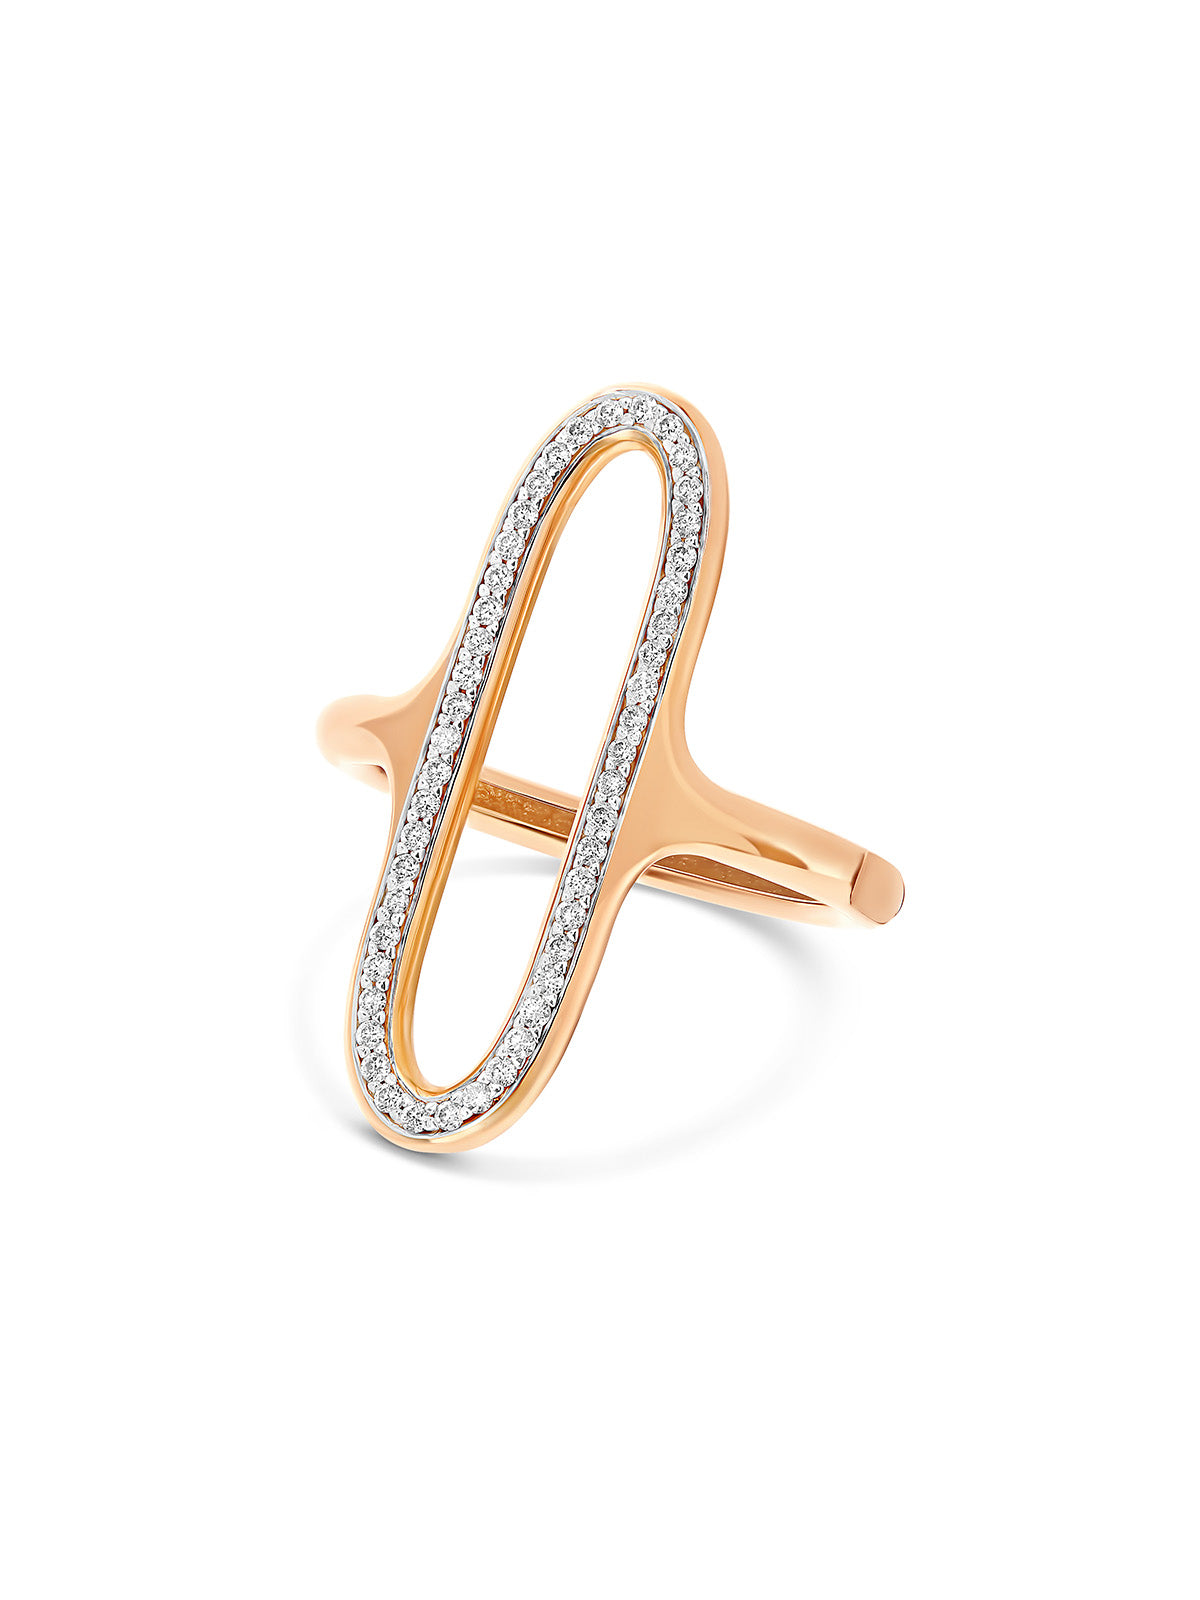 Ring “Libera” mit ovalem Element aus Roségold und Diamanten (groß)